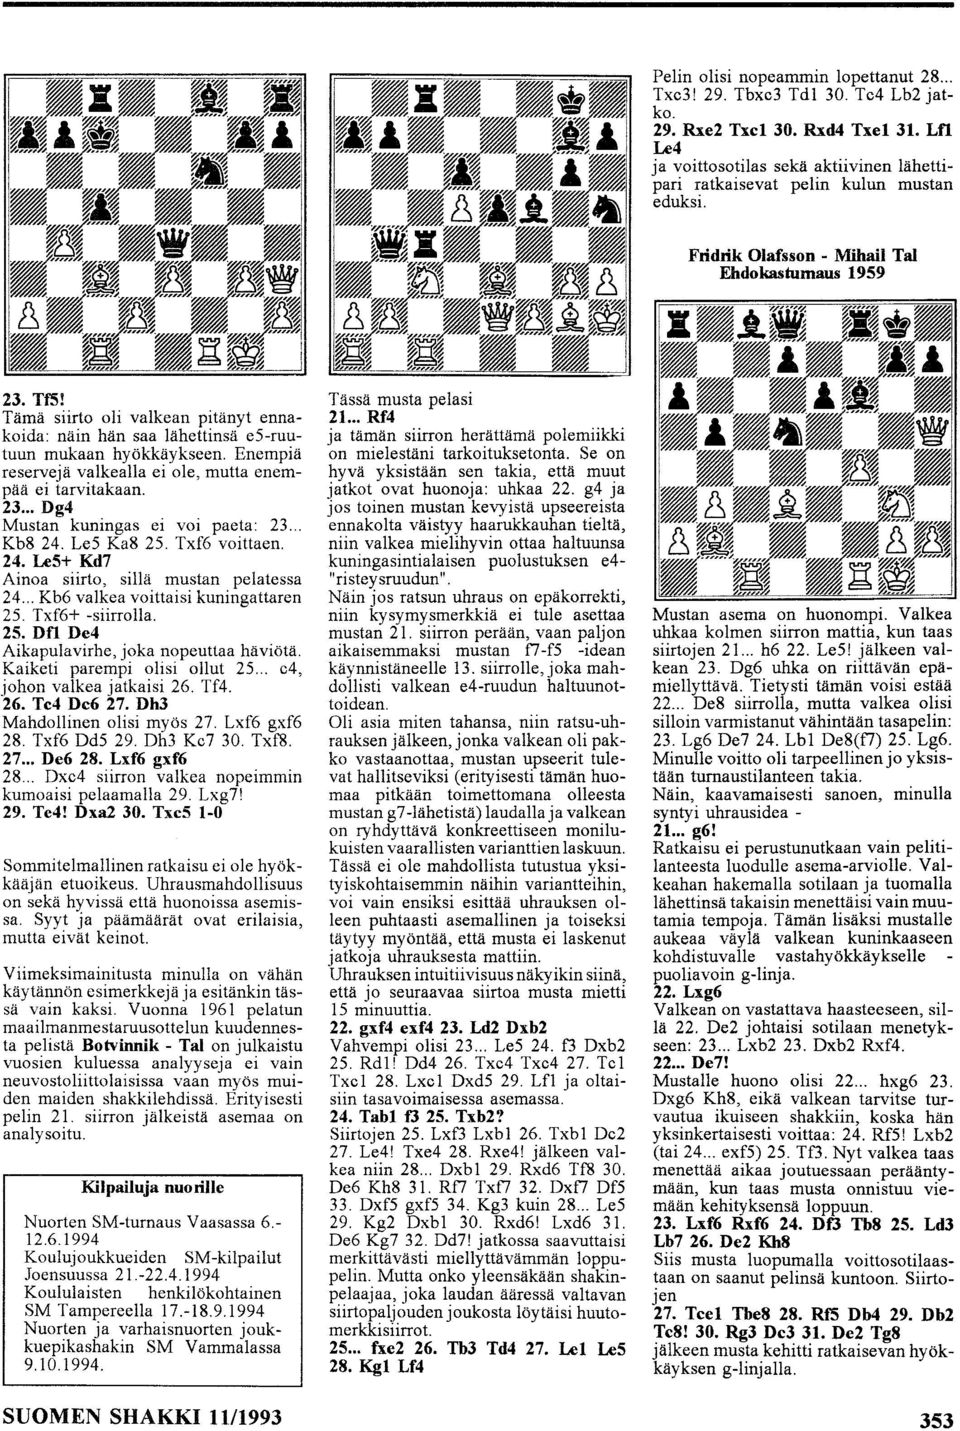 Enempiä reservejä vaikealla ei ole, mutta enempää ei tarvitakaan. 23... Dg4 Mustan kuningas ei voi paeta: 23... Kb8 24. LeS Ka8 25. Txf6 voittaen. 24. Le5+ Kd7 Ainoa siirto, sillä mustan pelatessa 24.